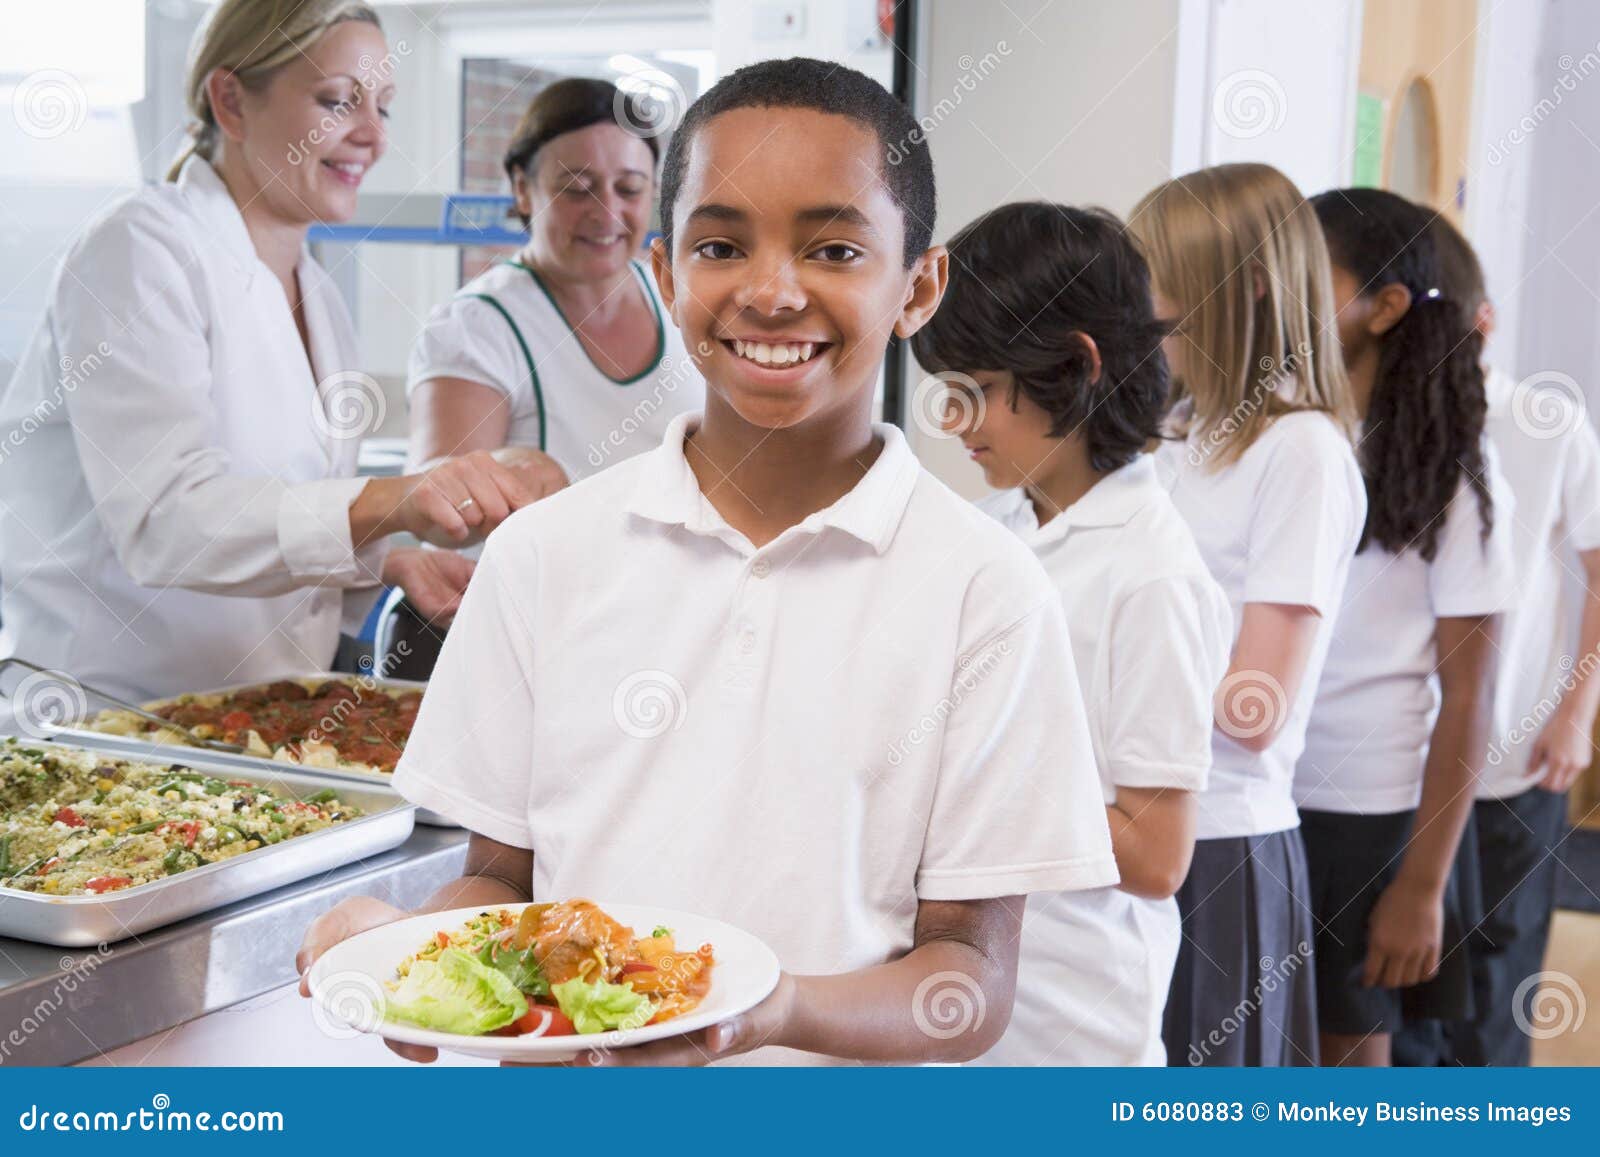 schoolboy in a school cafeteria